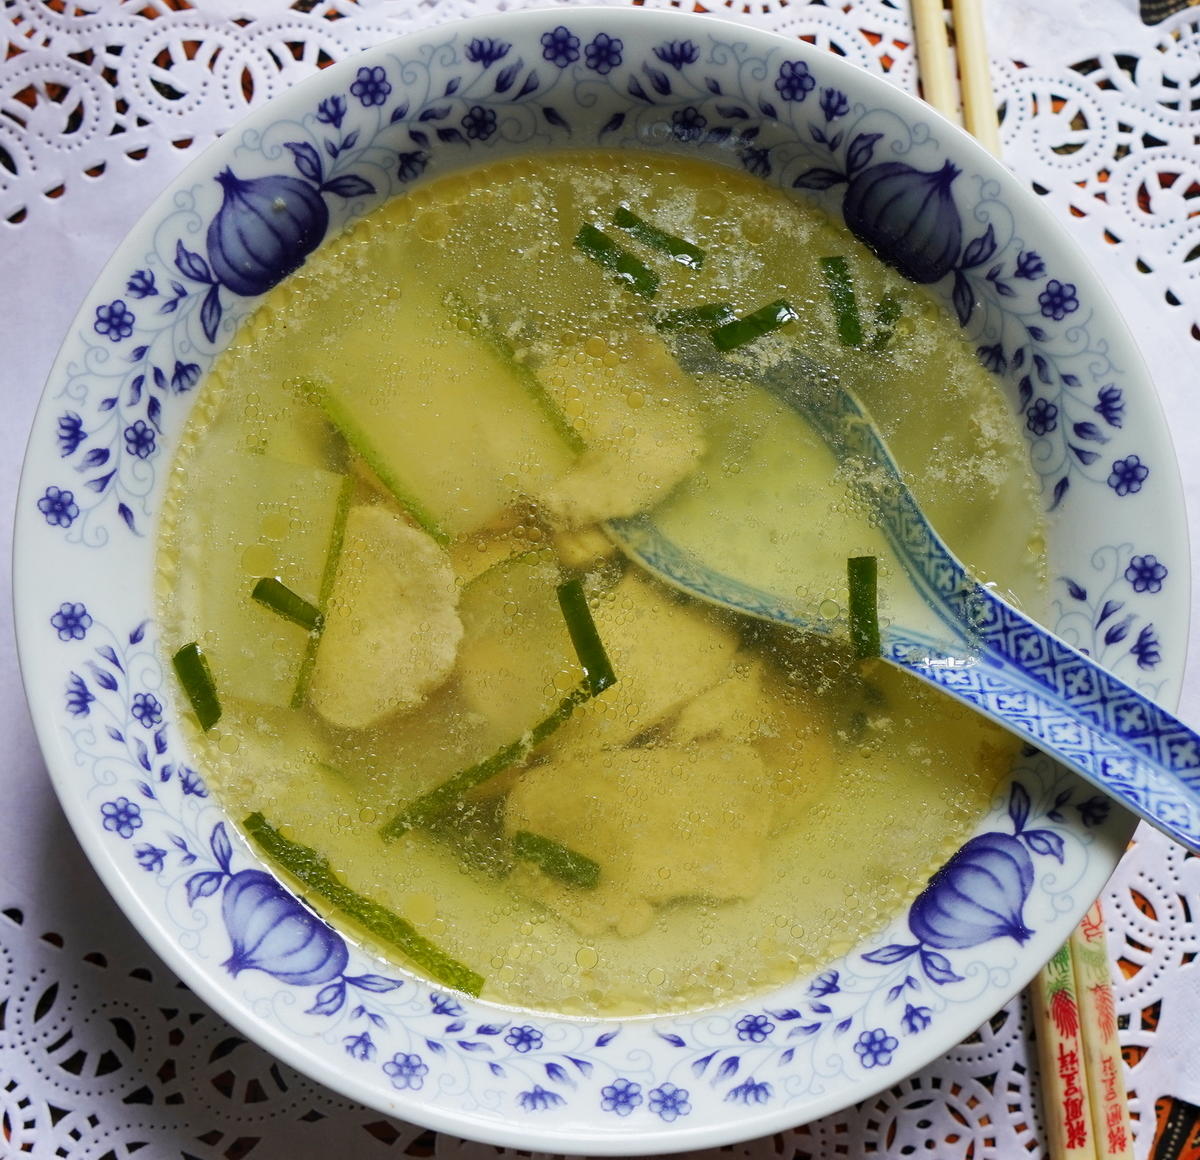 Suppe mit Gurken und Hühnerfilet - Rezept - Bild Nr. 2